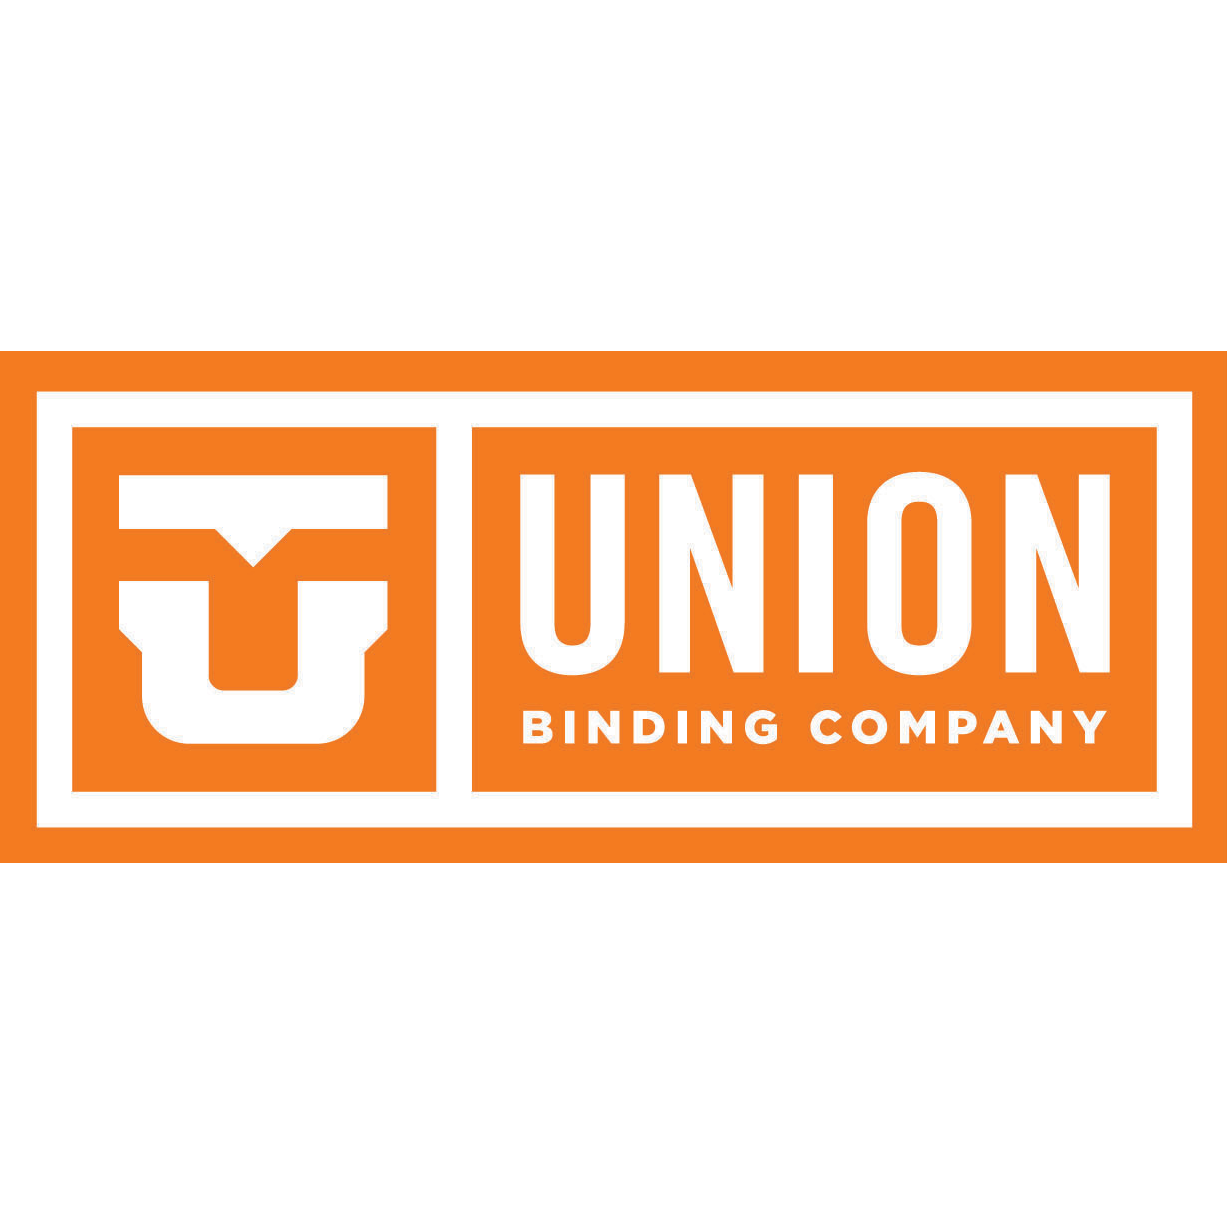 Union binding